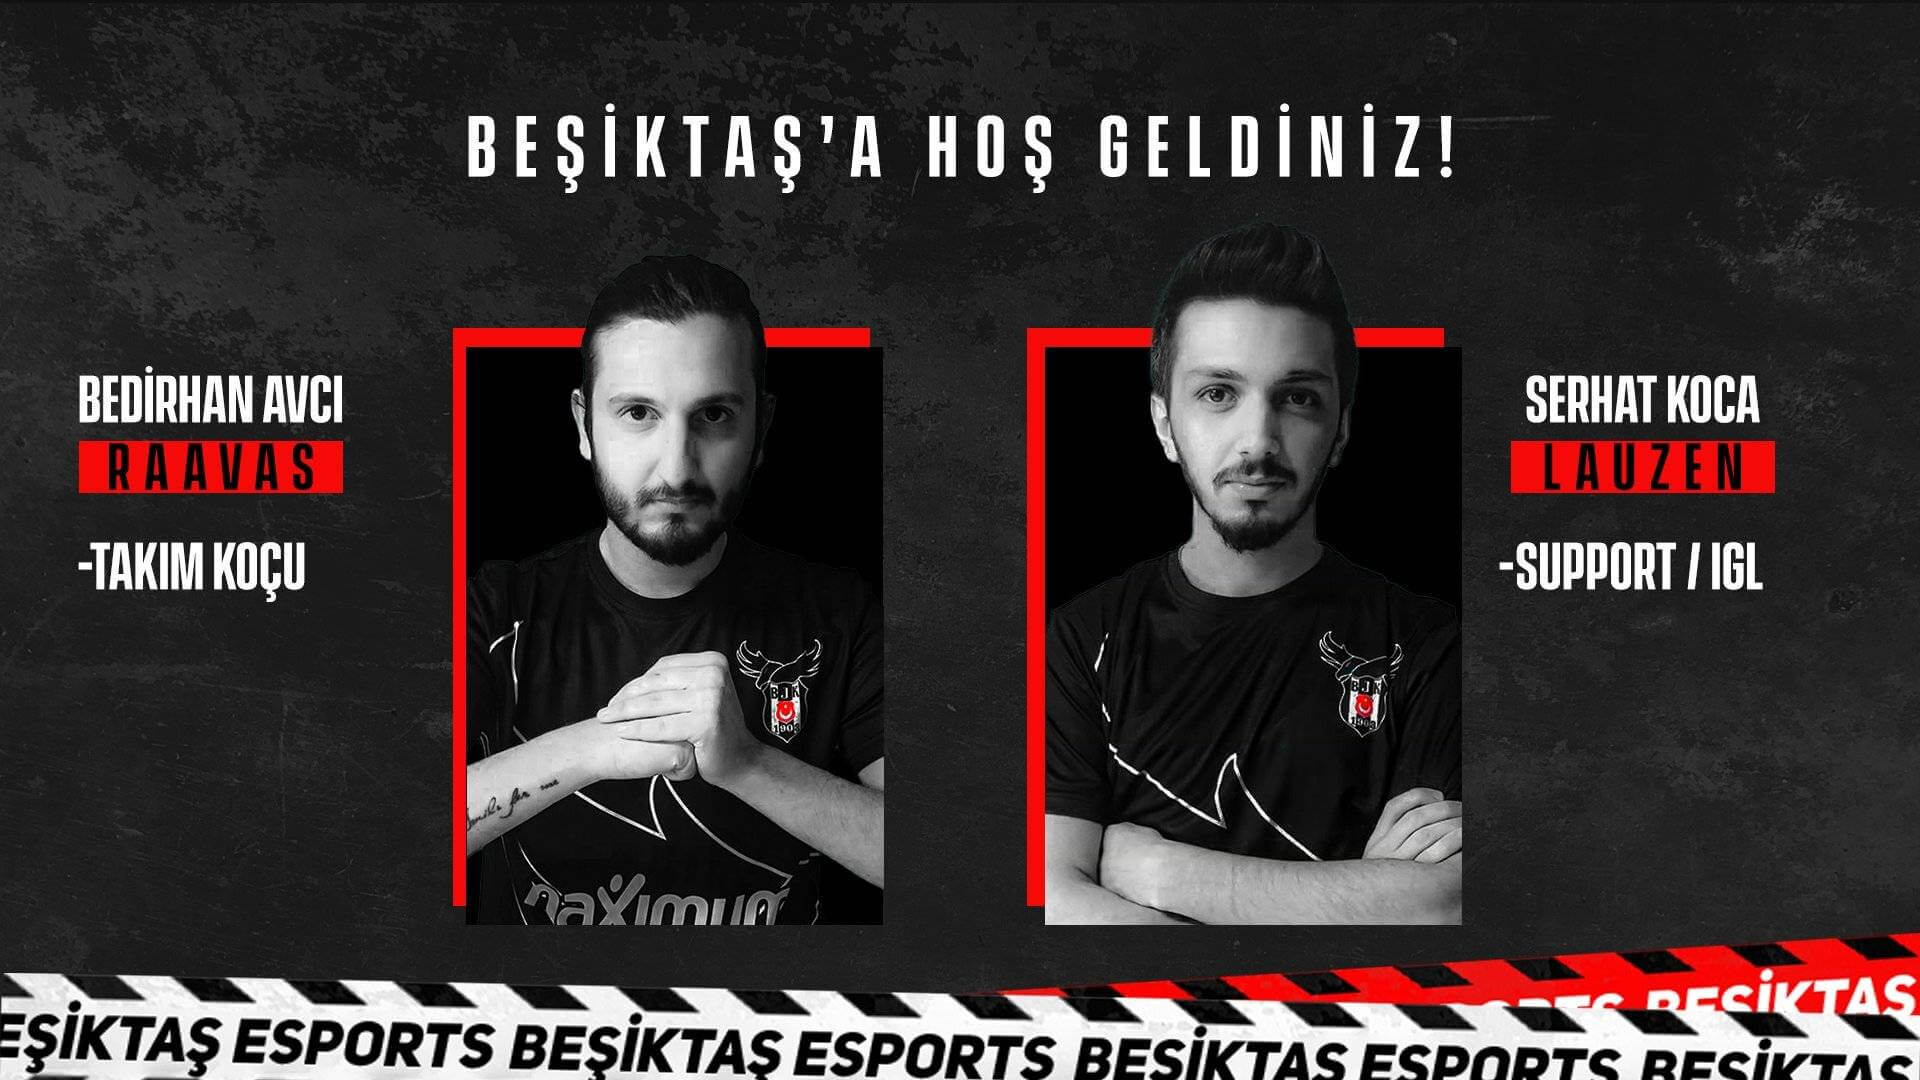 Beşiktaş Espor Valorant Kadrosuna İki Yeni İsmi Dahil Etti